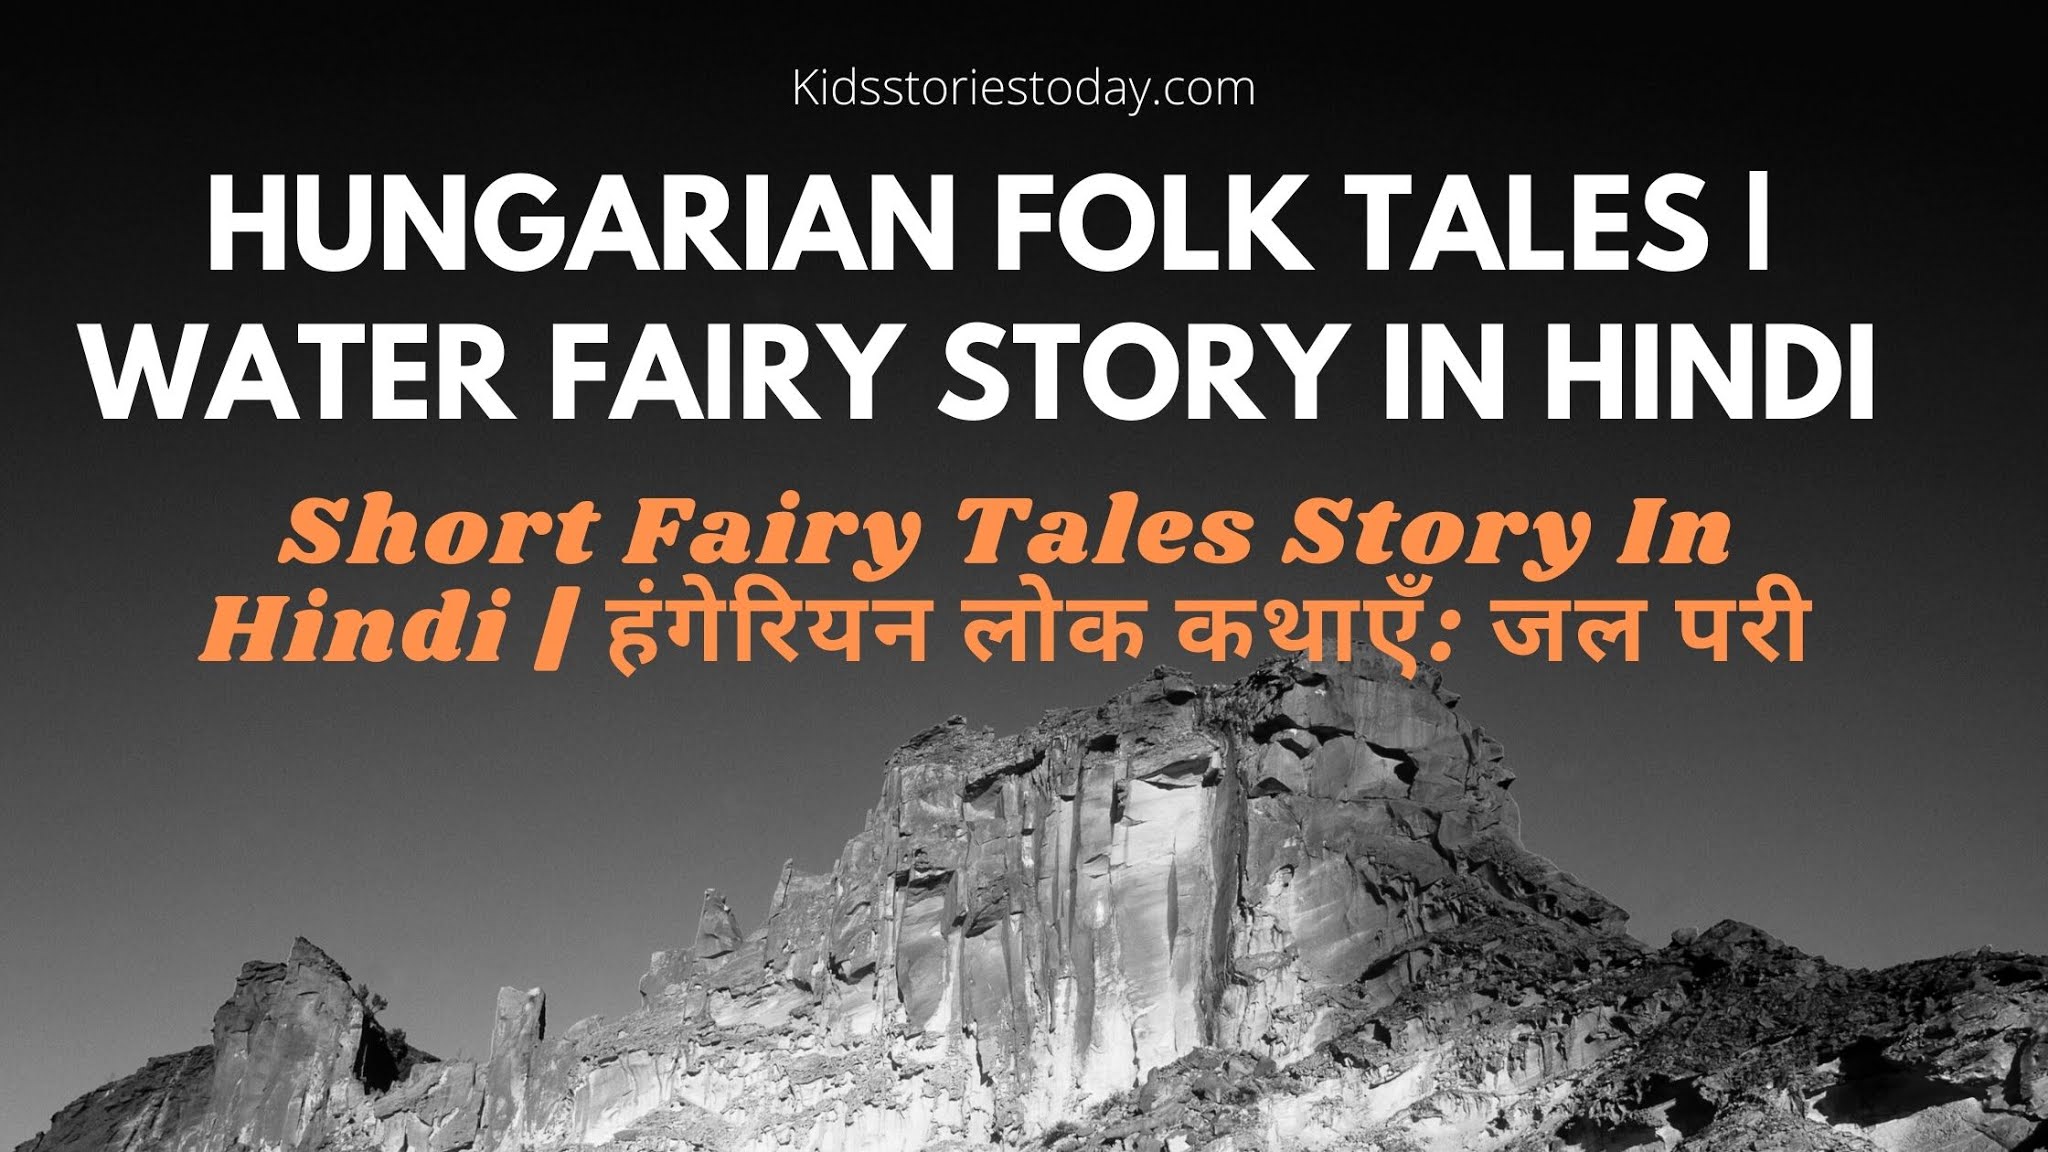 Short Fairy Tales Story In Hindi  हंगेरियन लोक कथाएँ जल परी